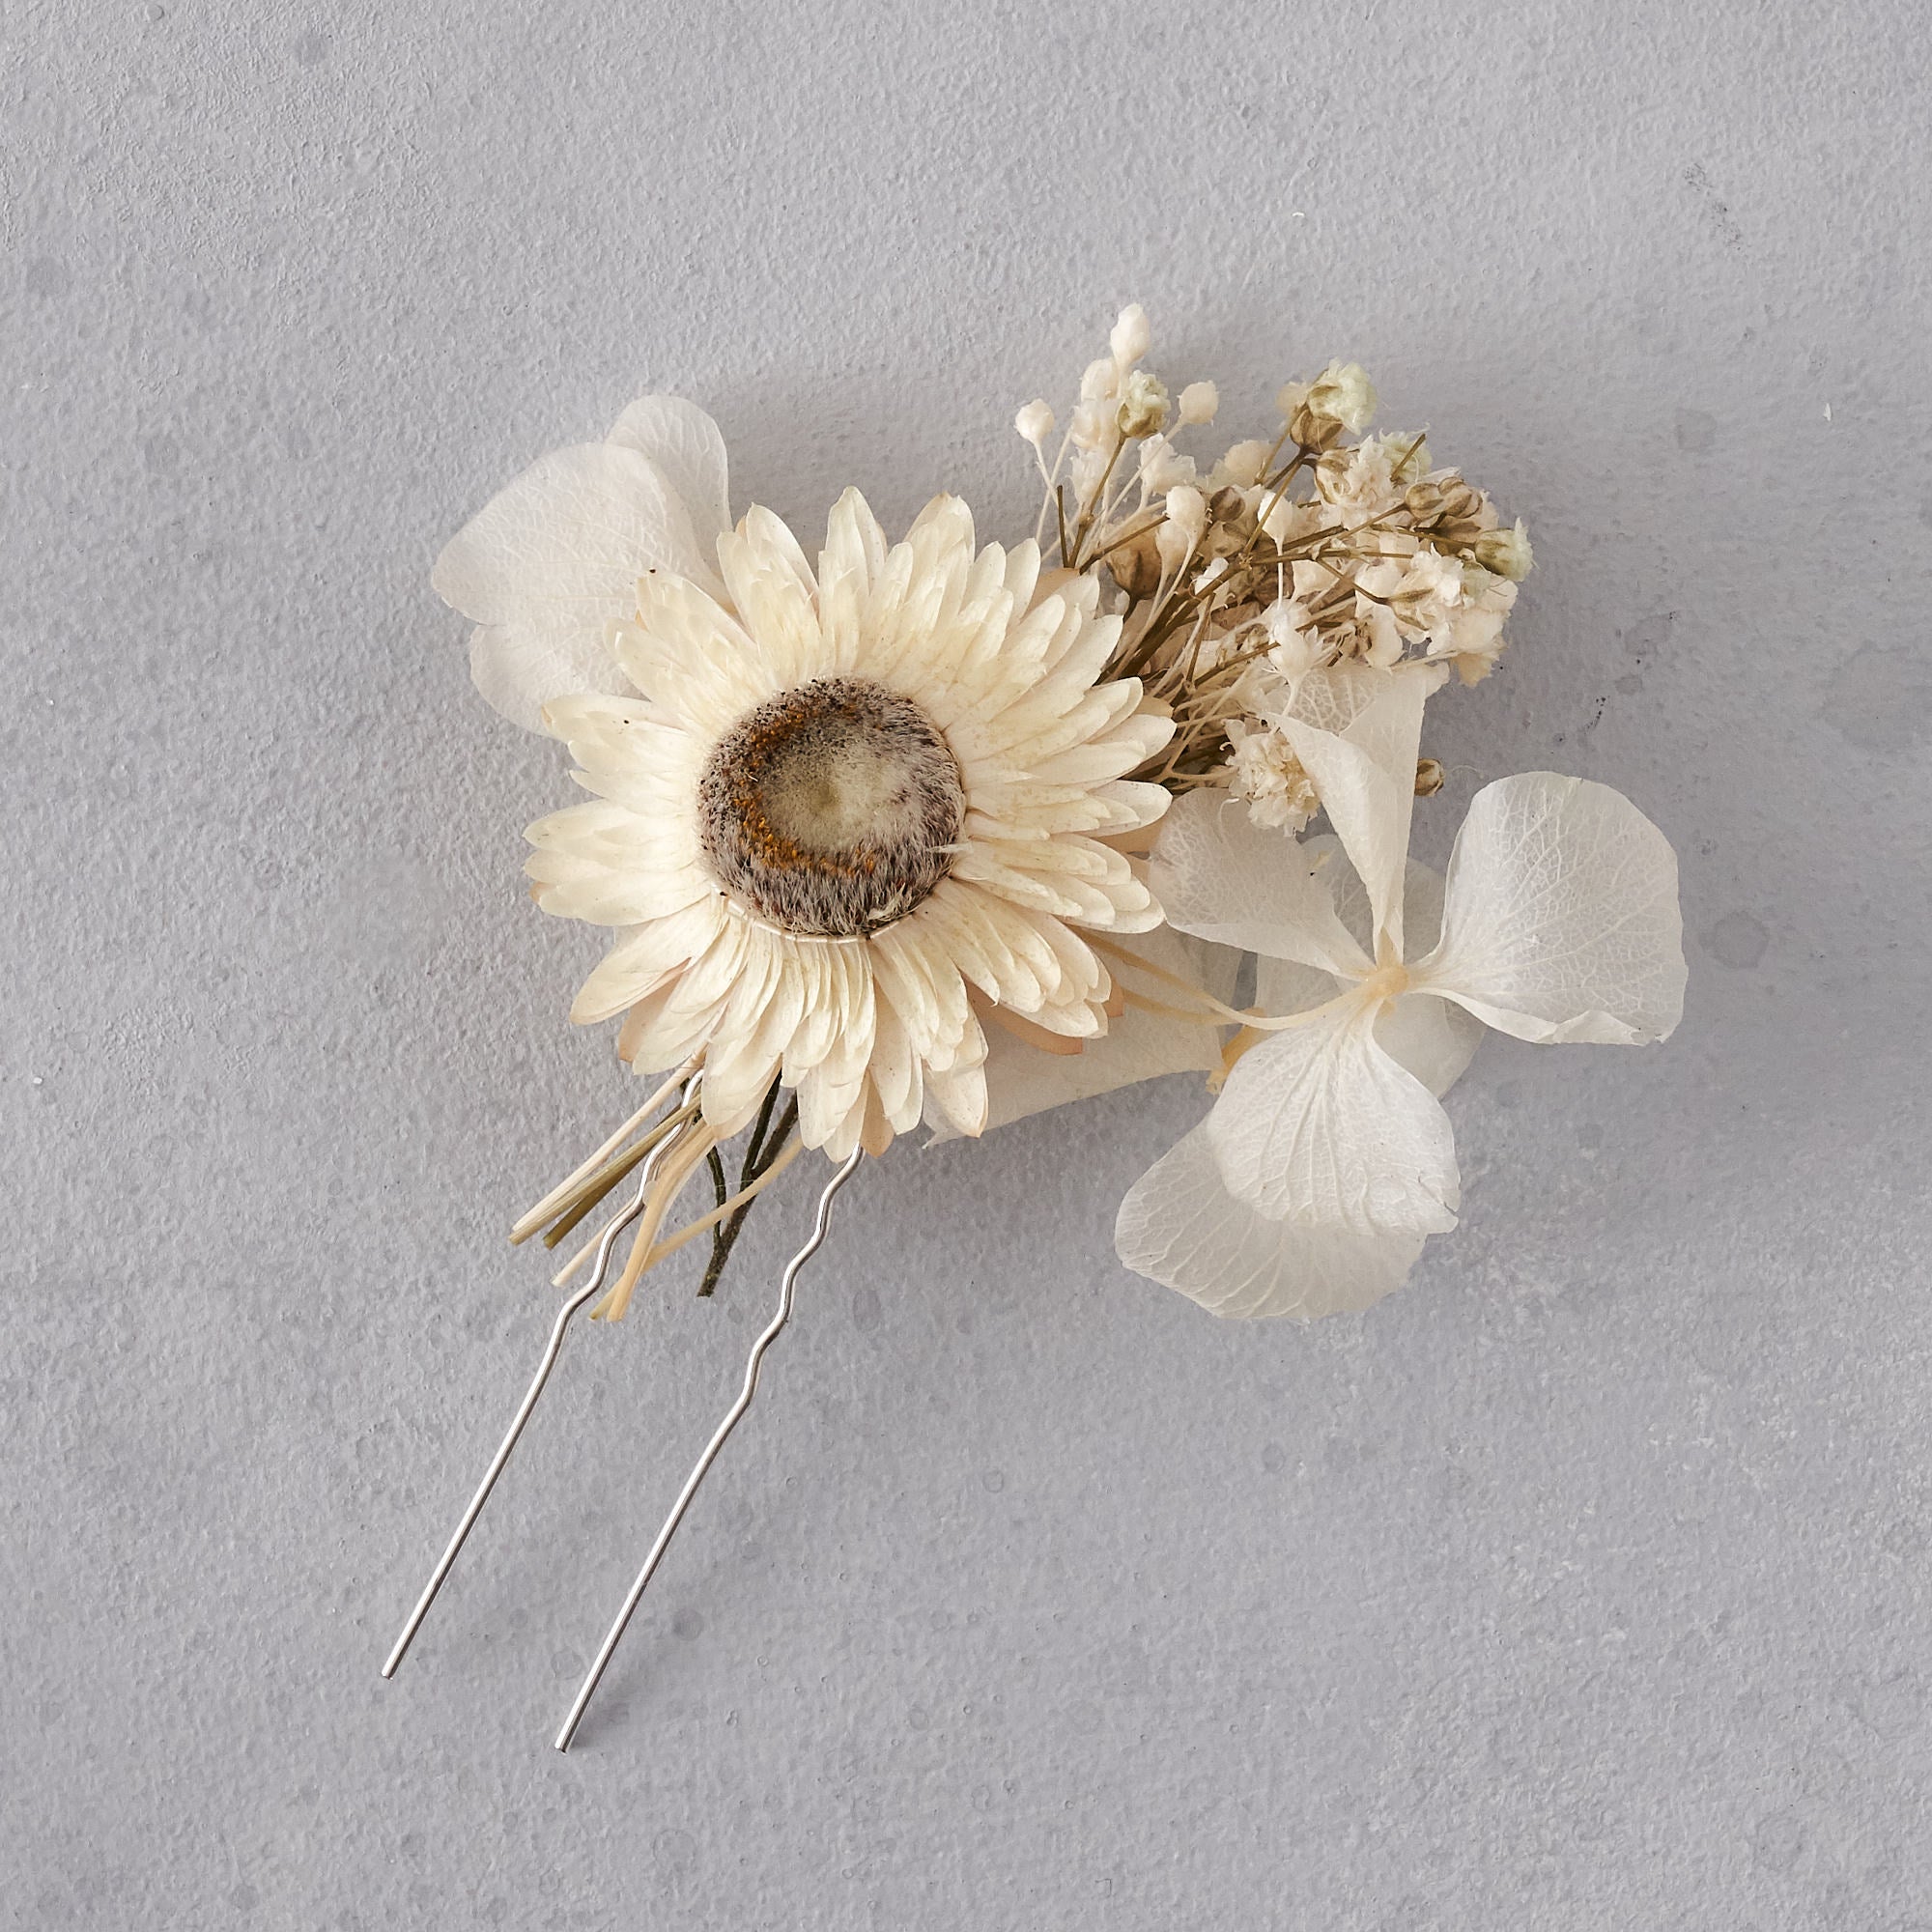 Dried flower hair pin : white